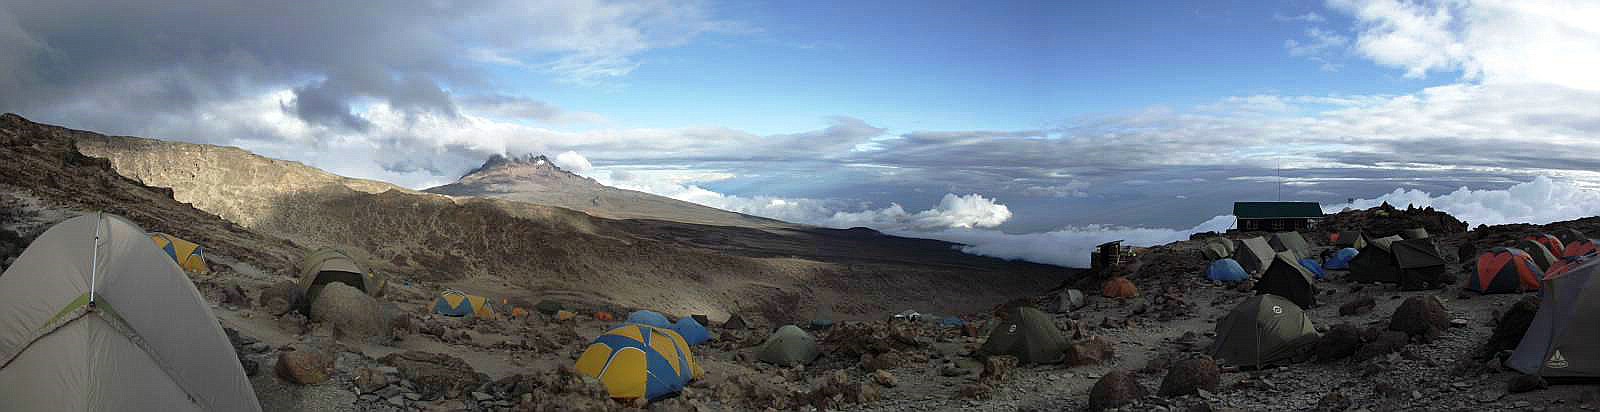 Im Barafu Camp (4.600 m.a.S.L.) mit Blick nach Osten zum Mawenzi - Januar 2013